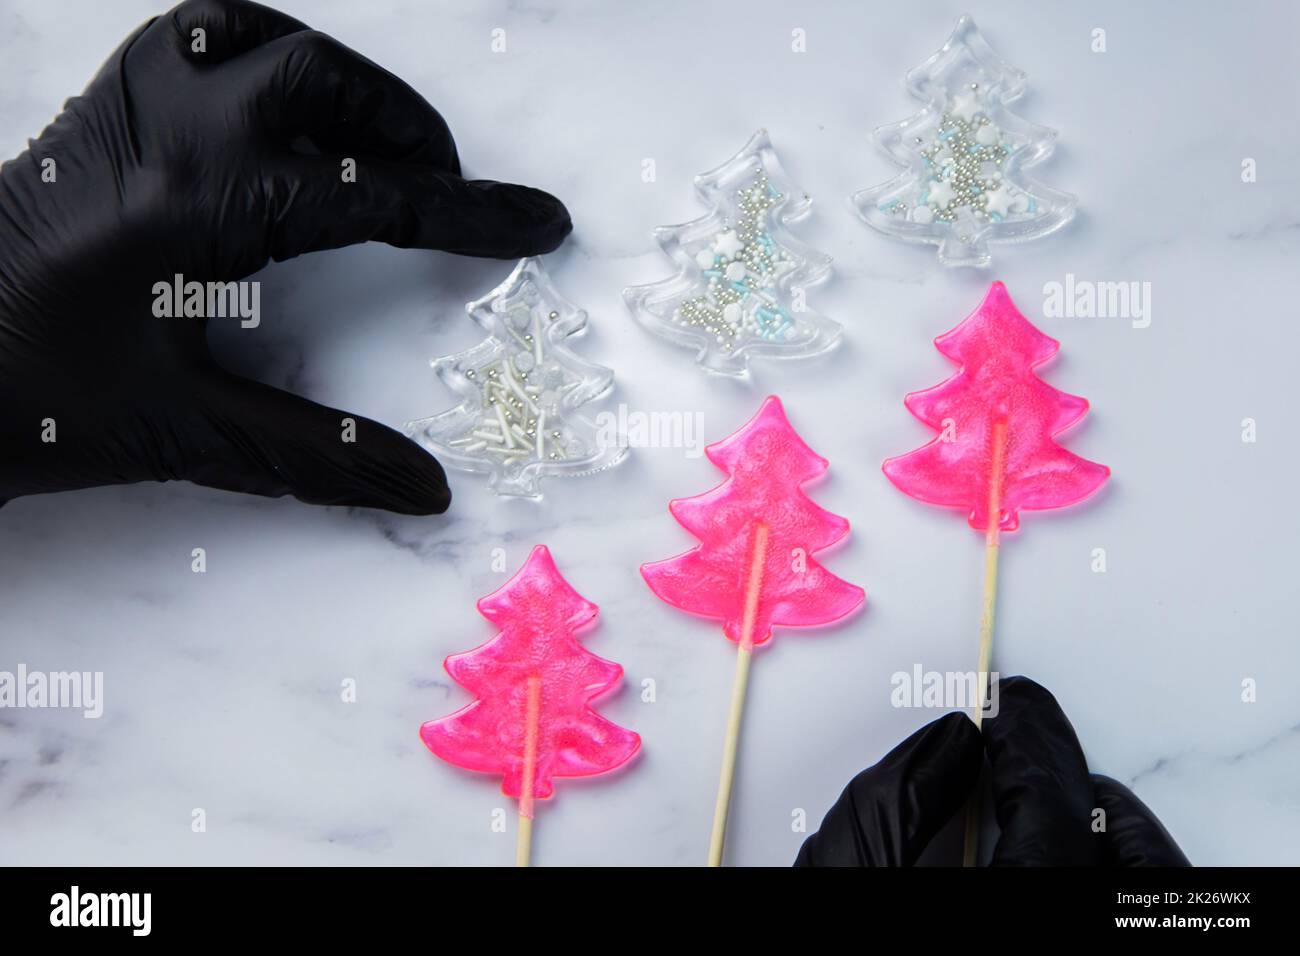 Trois sucettes roses sous forme d'arbres de Noël se trouvent sur du marbre blanc, au-dessus sont des arbres de Noël blancs - des sucettes à la poudre, les extrémités tiennent les mains dans des gants noirs. Banque D'Images